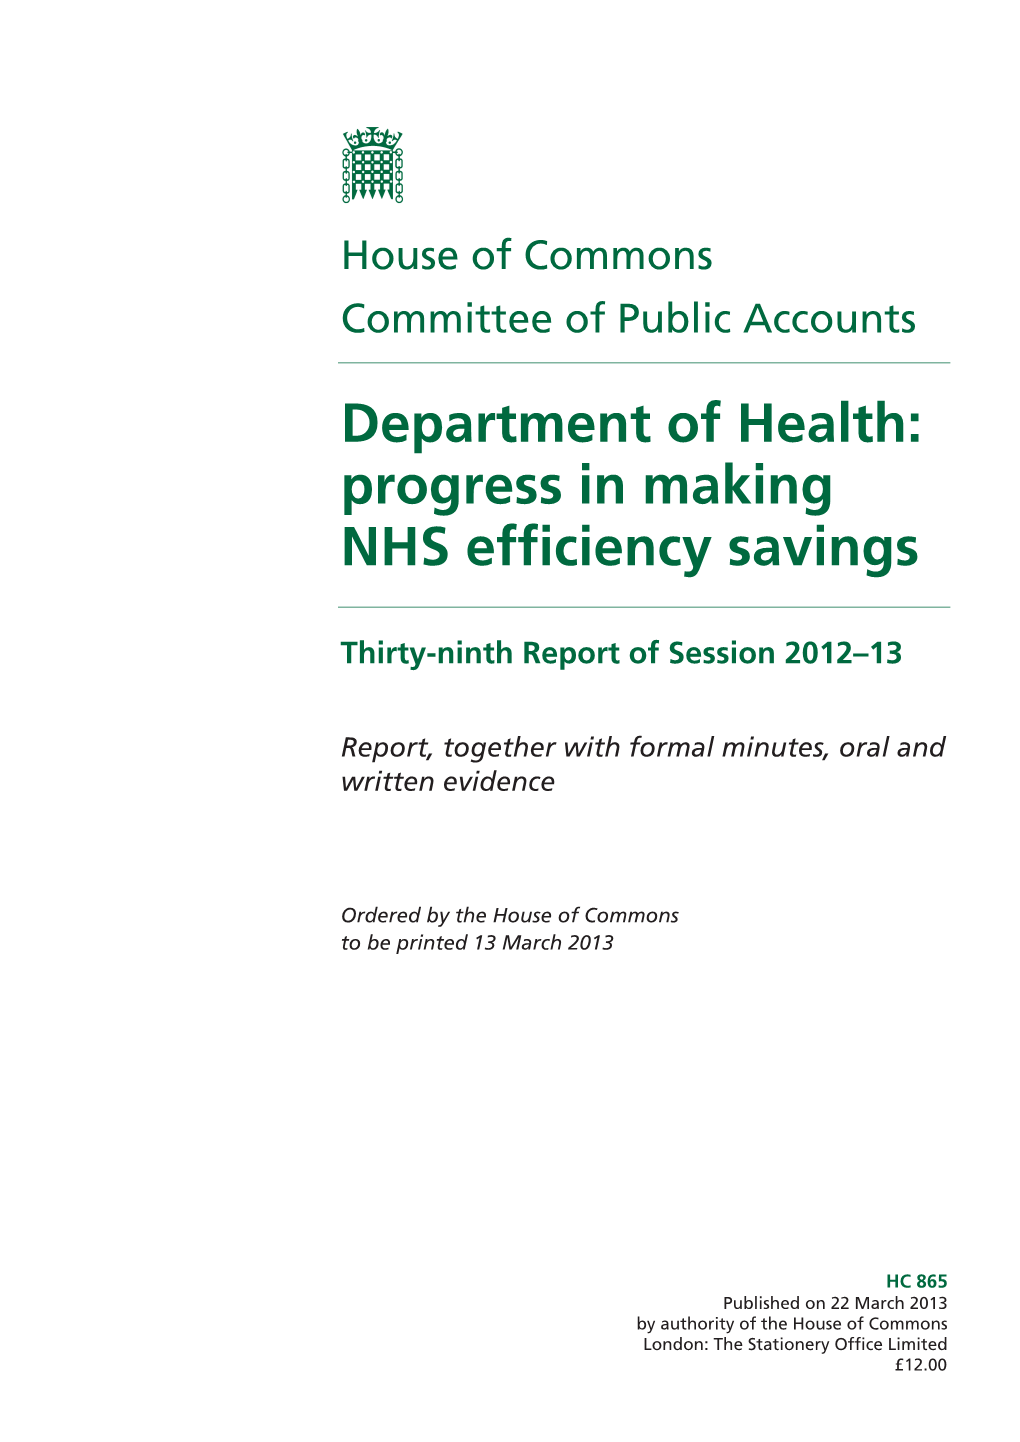 Department of Health: Progress in Making NHS Efficiency Savings